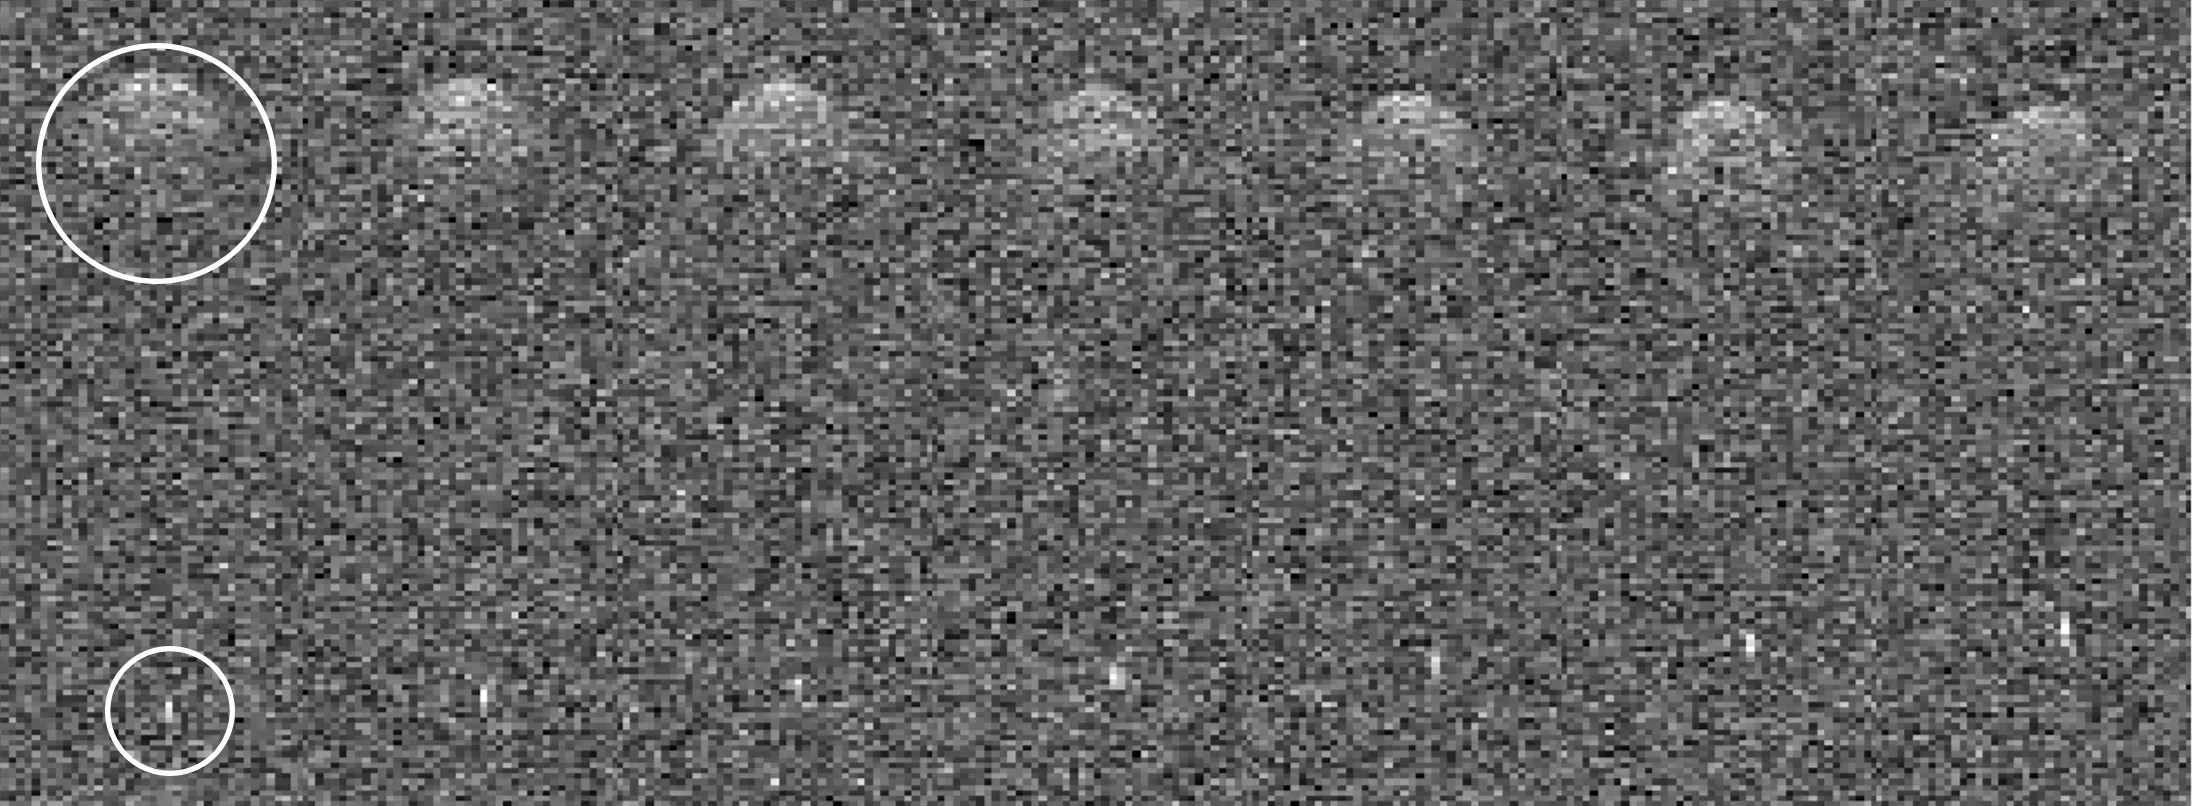 Астероид 2011 UL21